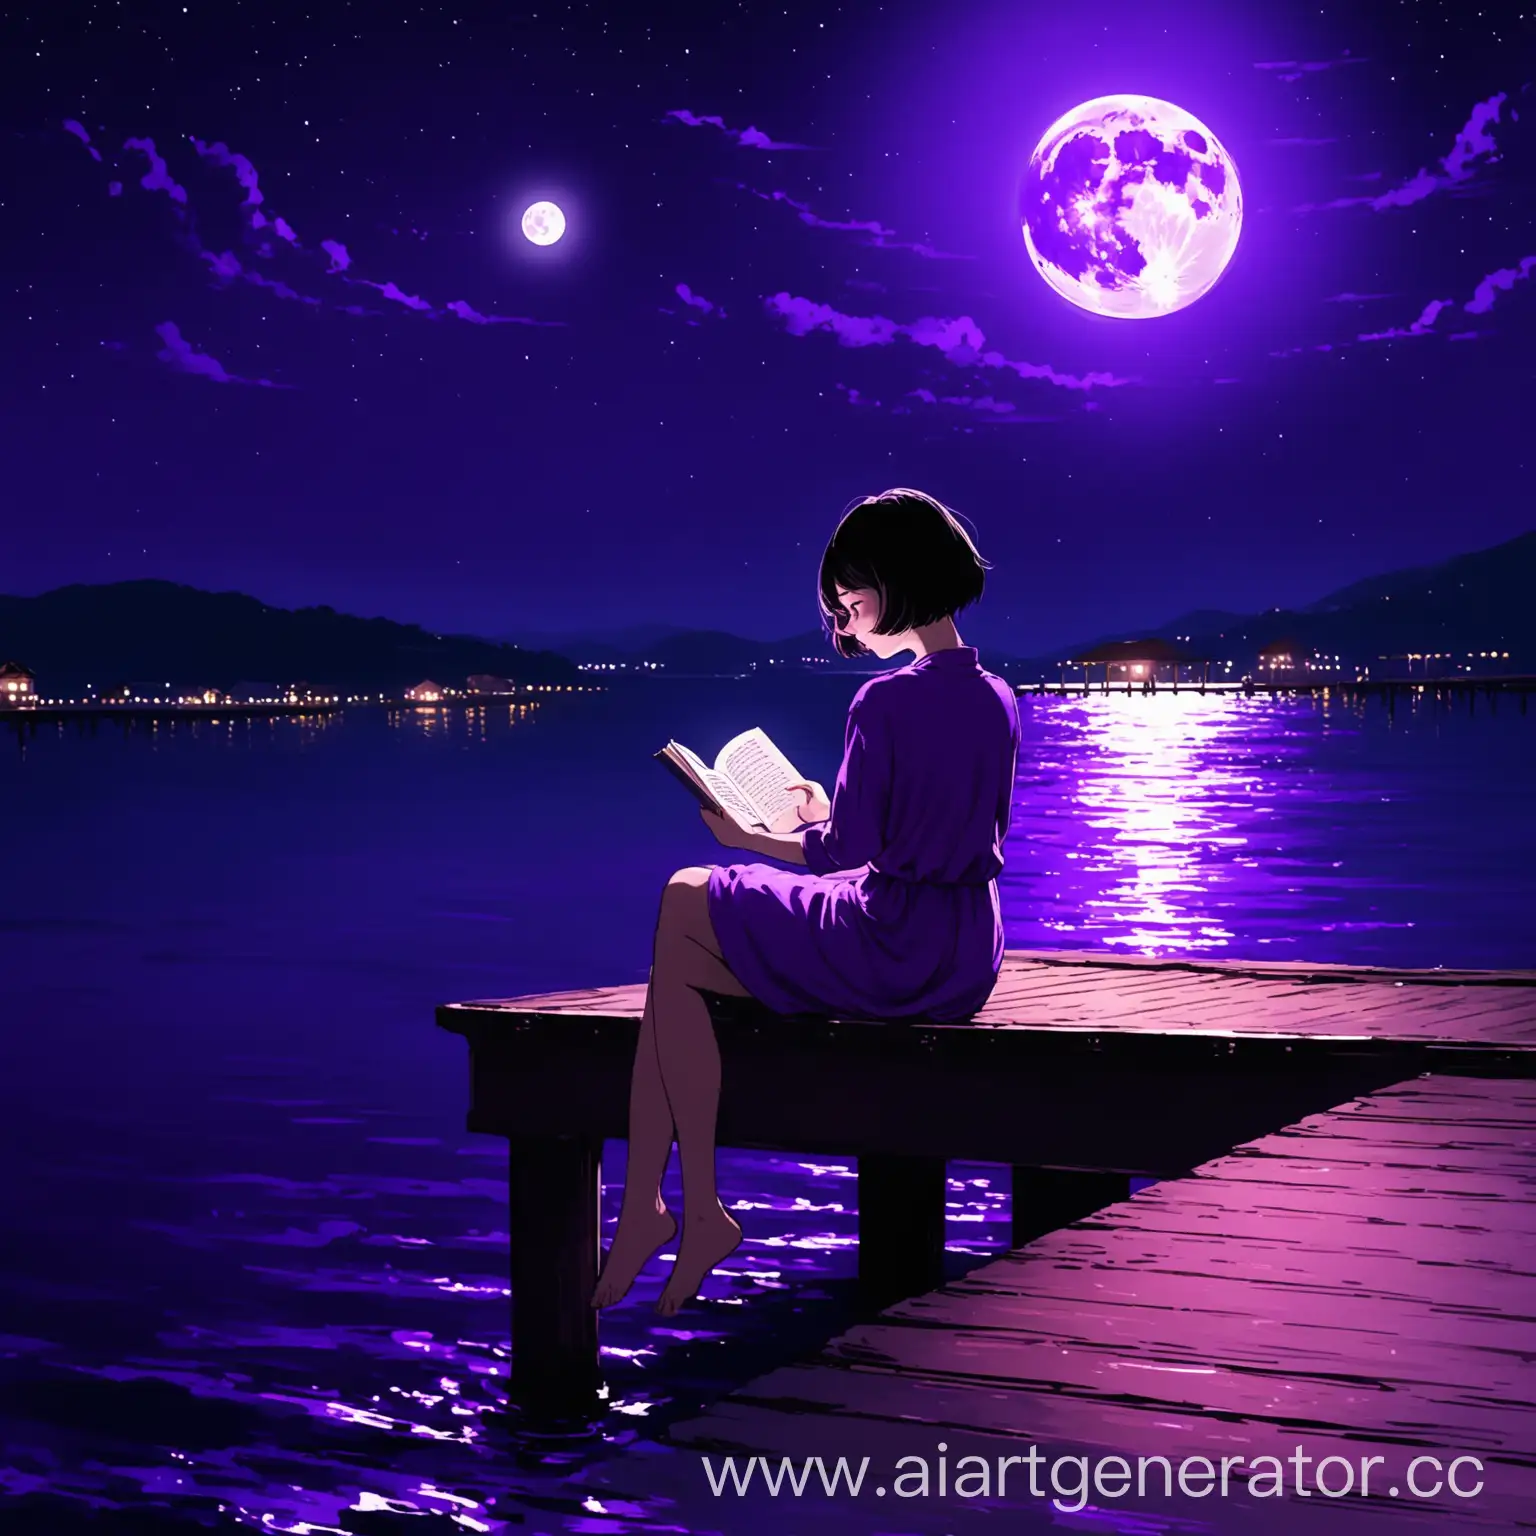 Девушка с короткими волосами сидит на пирсе в фиолетовой ночи, при полной луне, читая книгу